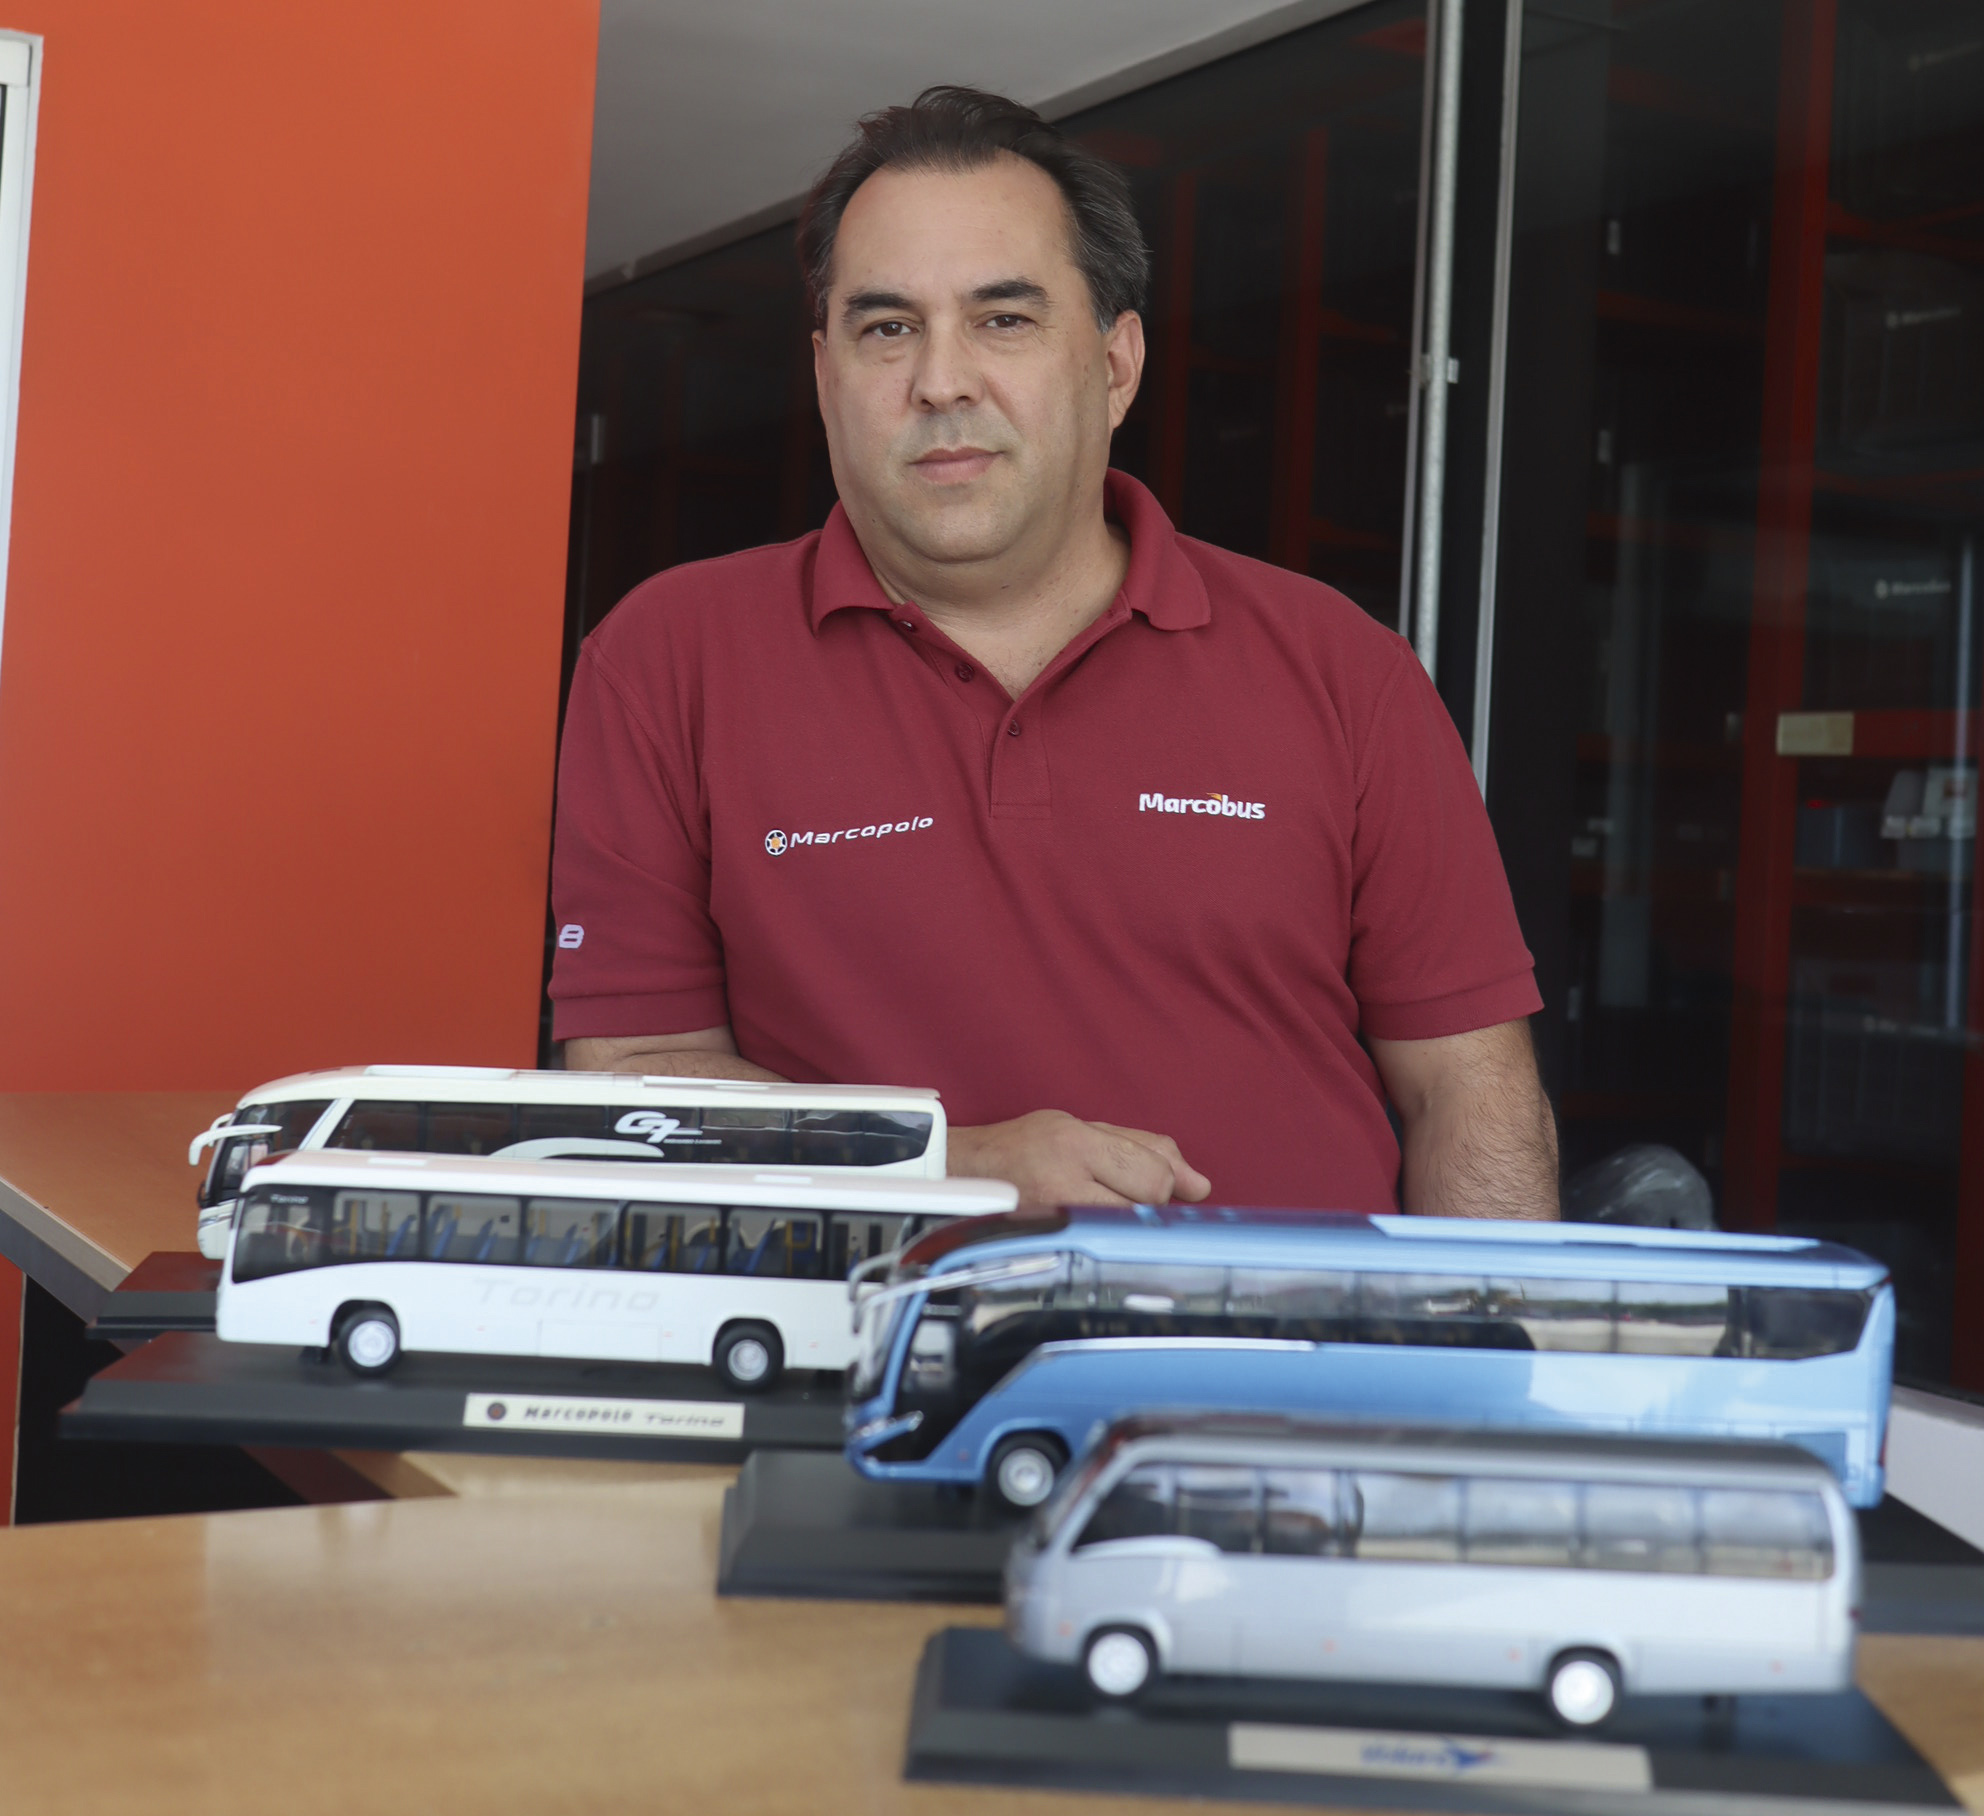 Mercado de ómnibus nuevos / EDUARDO DA COSTA de Marcopolo: “El G8 viene demostrando ser un producto excelente”